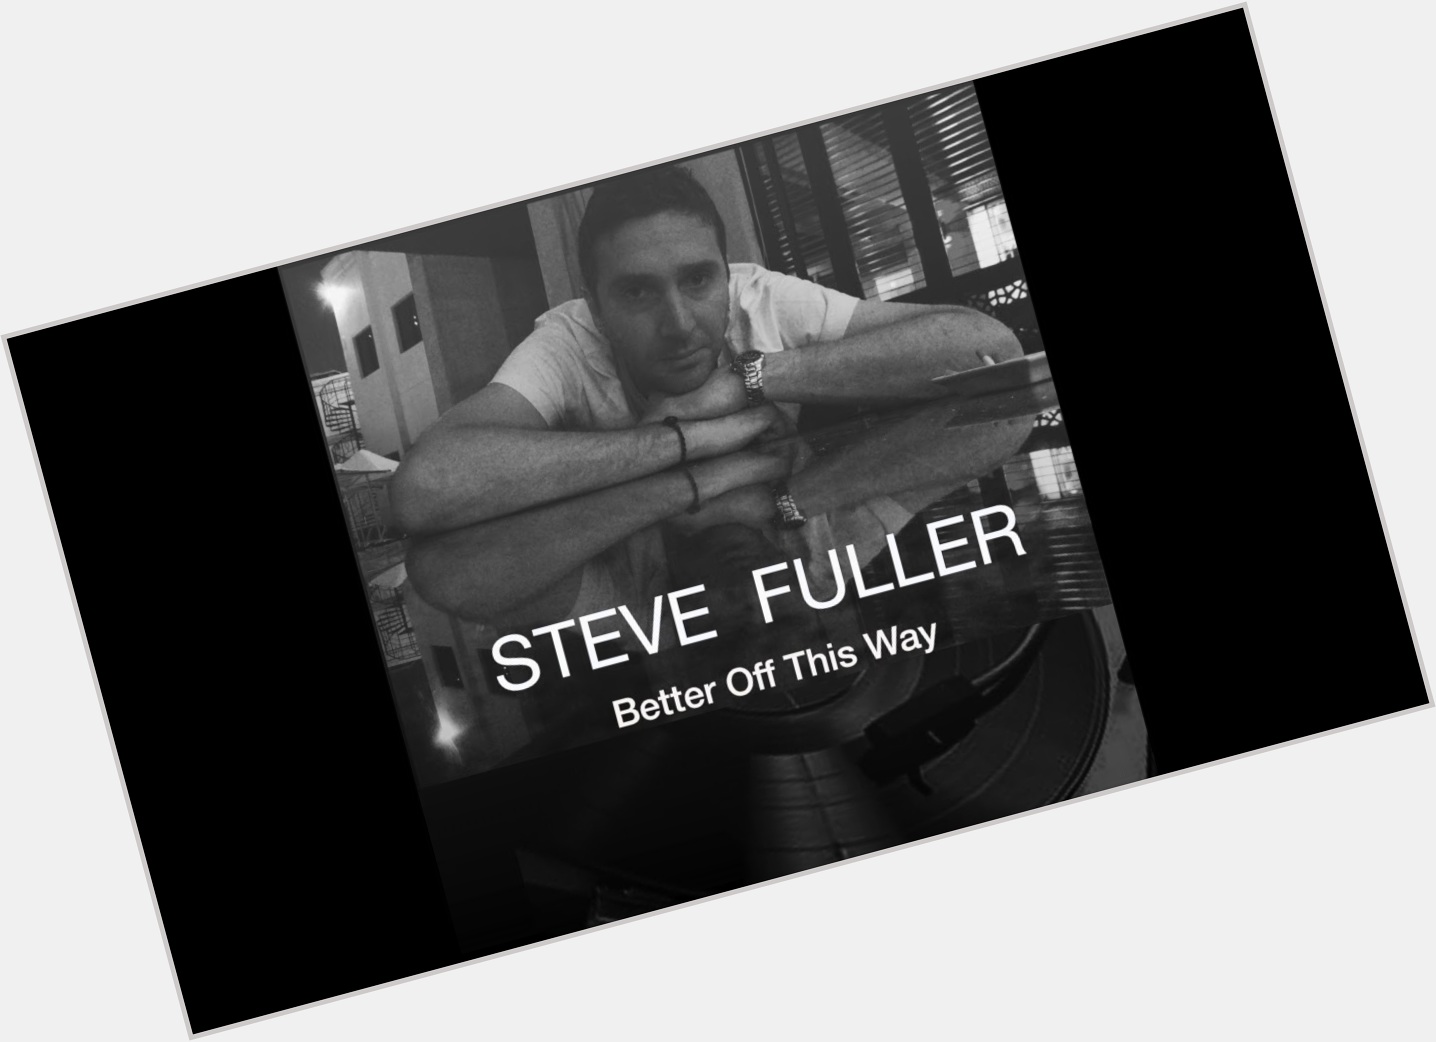 Steve Fuller dating 2